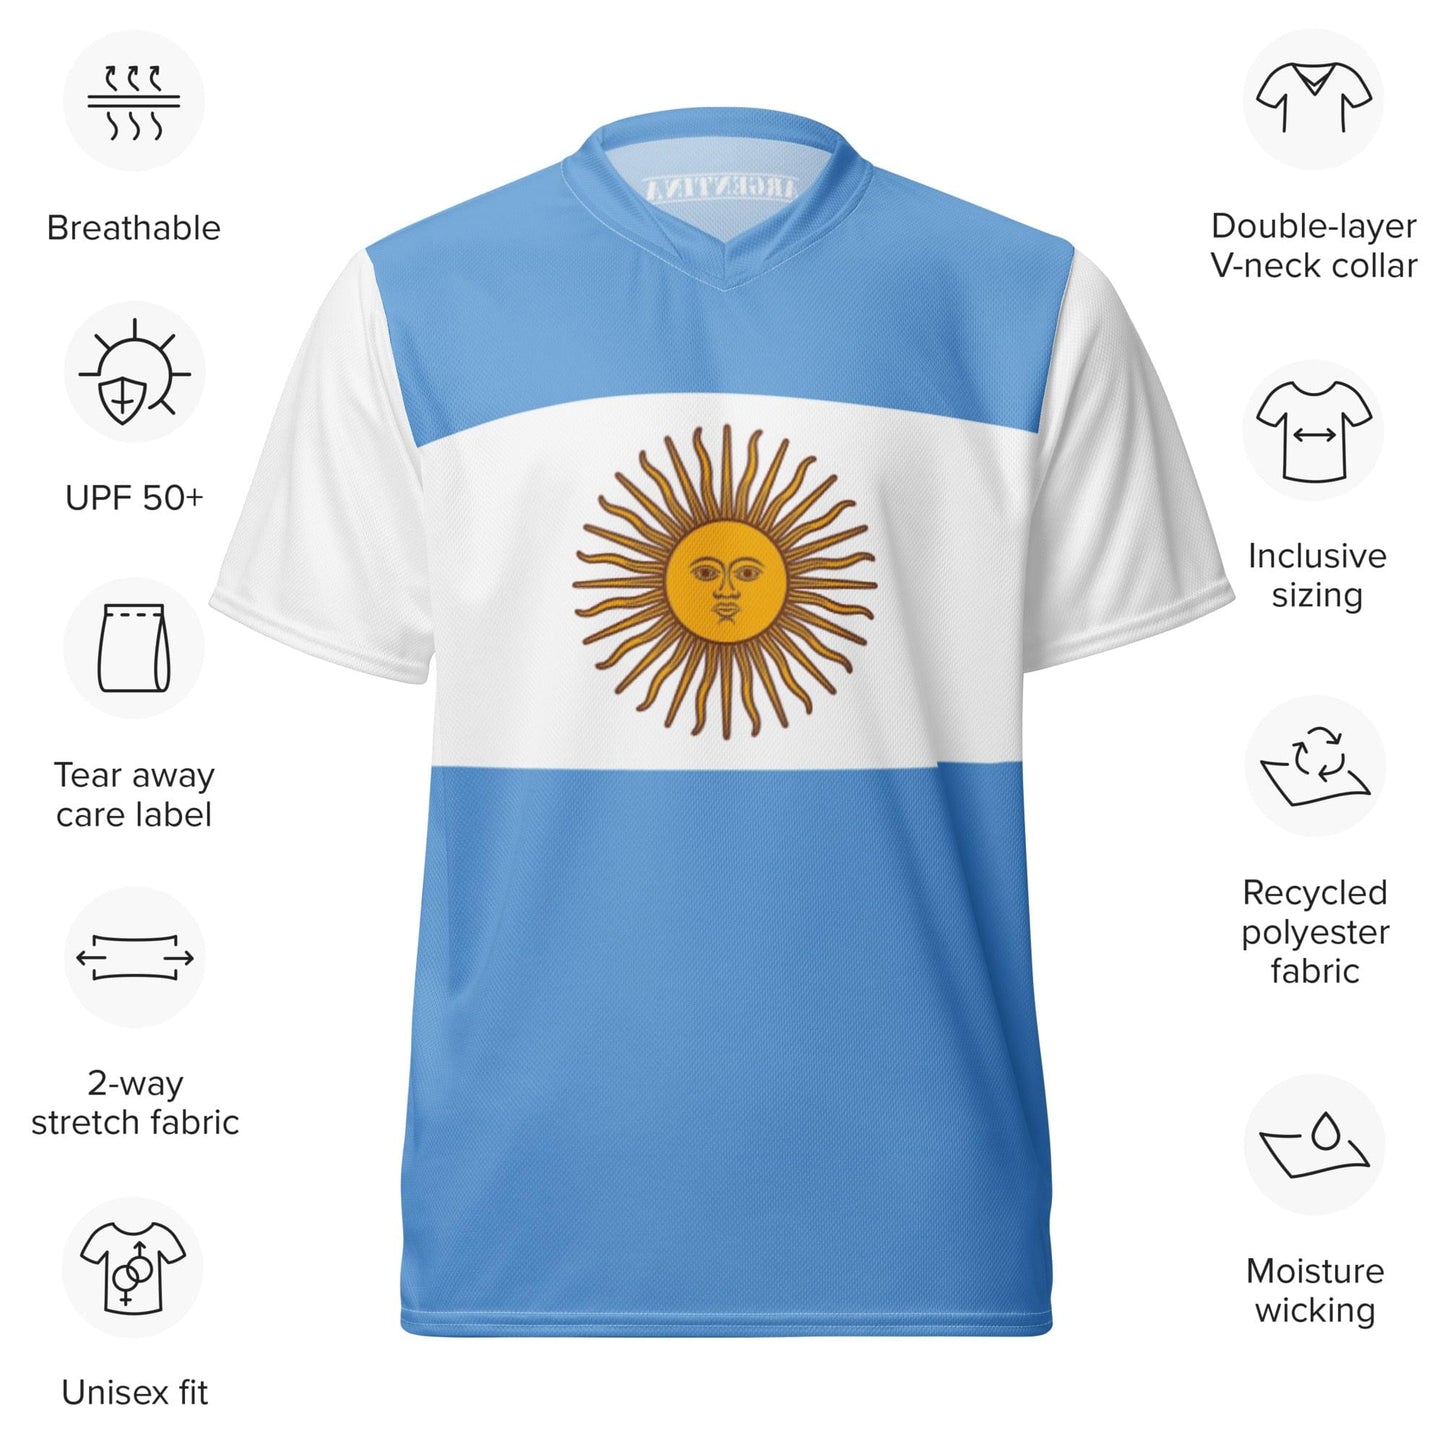 Maglia sportiva unisex in poliestere riciclato con bandiera dell'Argentina, taglie 2XS - 6XL